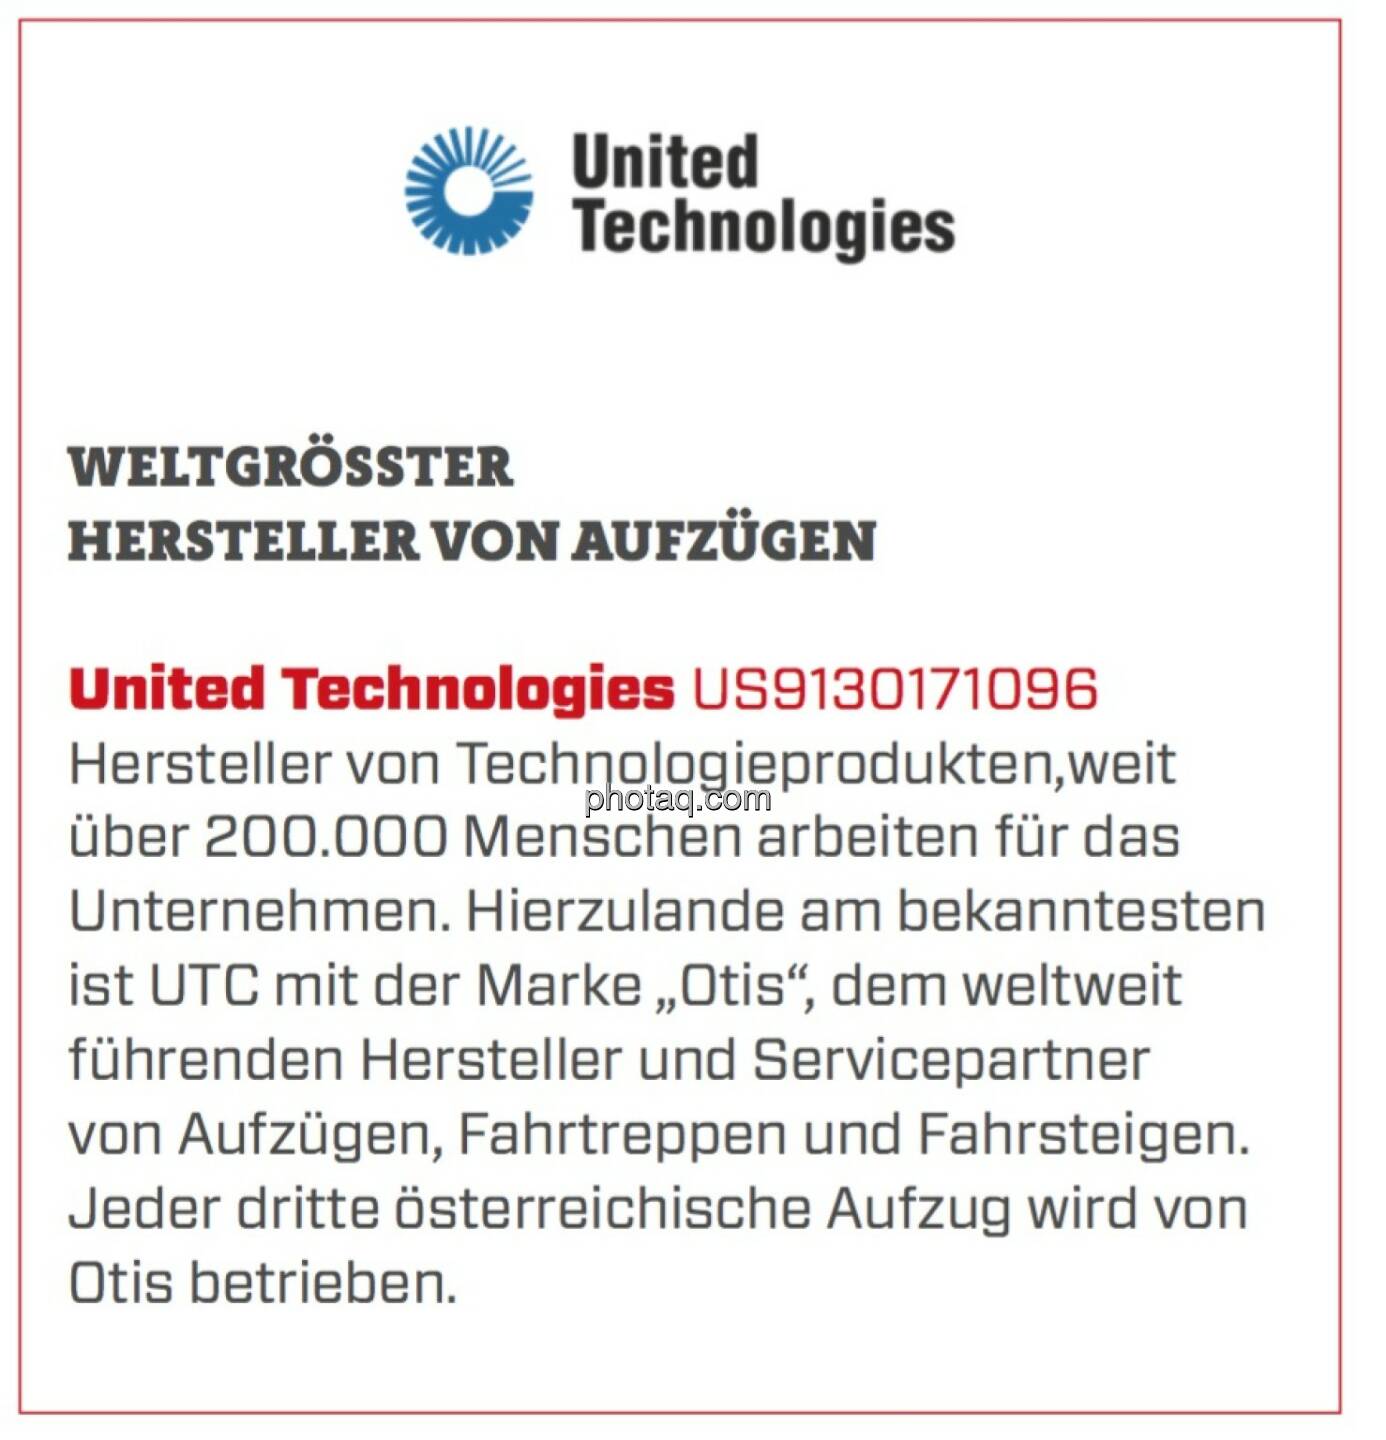 United Technologies - Weltgrößter Hersteller von Aufzügen: Hersteller von Technologieprodukten,weit über 200.000 Menschen arbeiten für das Unternehmen. Hierzulande am bekanntesten ist UTC mit der Marke „Otis“, dem weltweit führenden Hersteller und Servicepartner von Aufzügen, Fahrtreppen und Fahrsteigen. Jeder dritte österreichische Aufzug wird von Otis betrieben. 